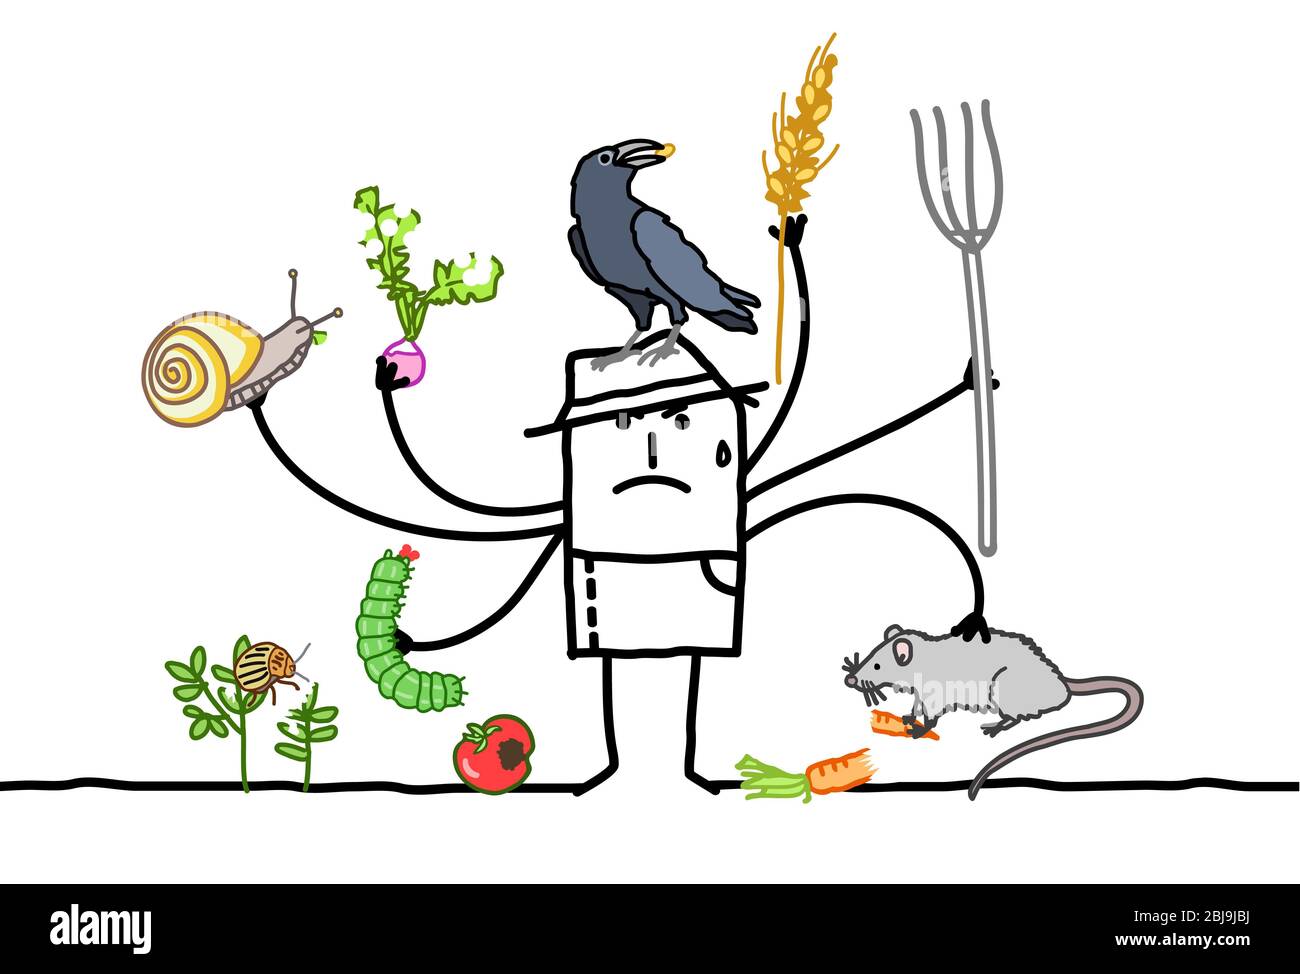 Dibujó a mano a un granjero de dibujos animados multitarea, enojado por los animales comiendo sus plantas Foto de stock